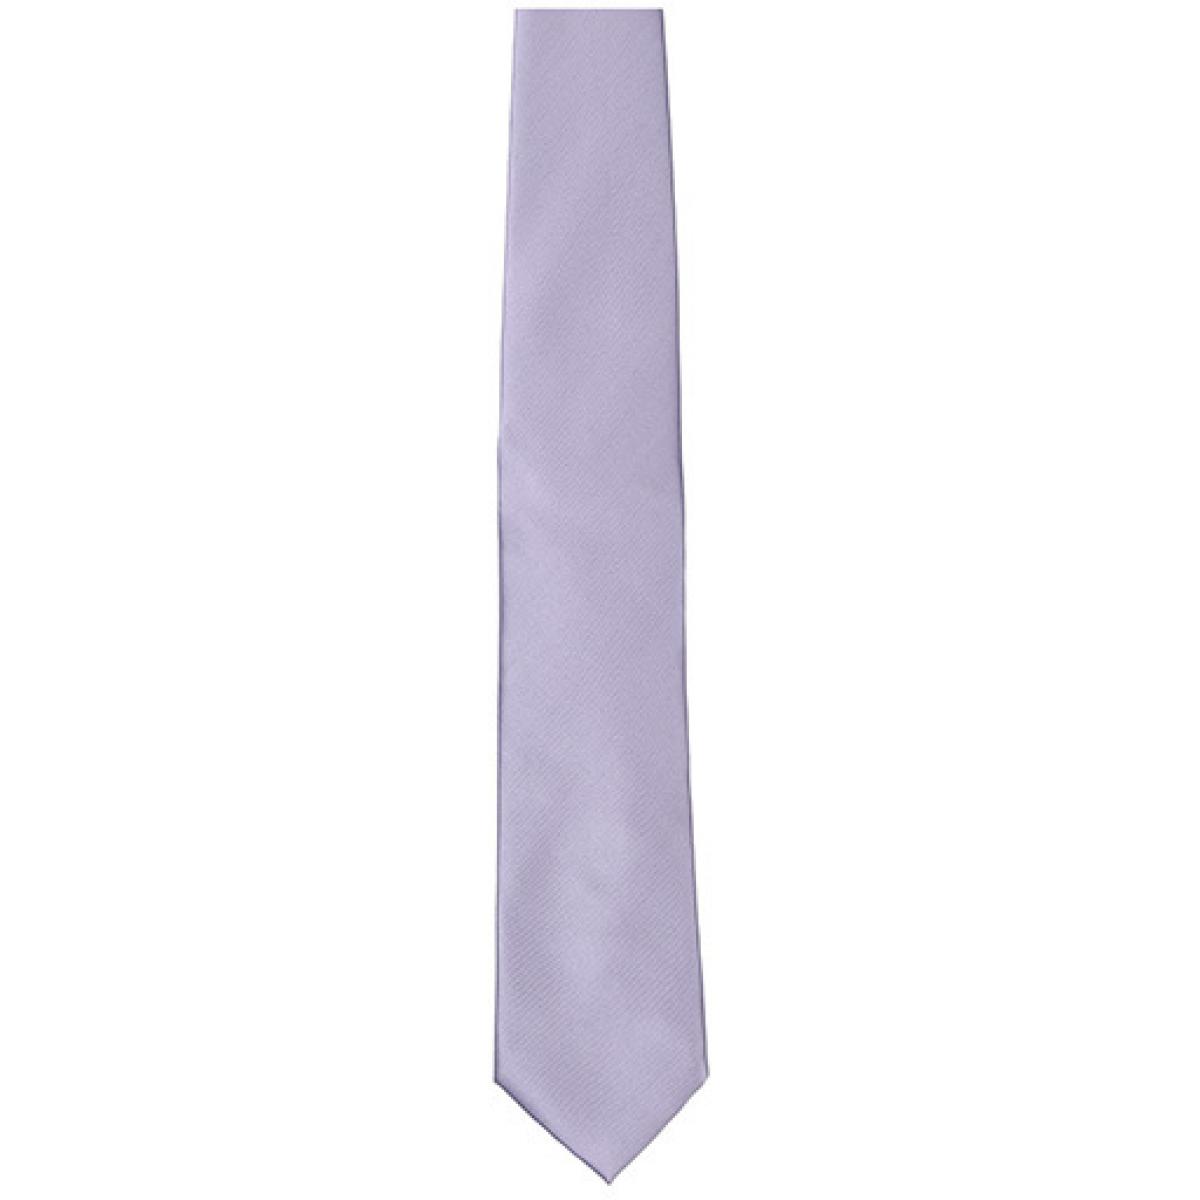 Hersteller: TYTO Herstellernummer: TT901 Artikelbezeichnung: Satin Tie / 144 x 8,5cm /  Zu 100% von Hand genäht Farbe: Lilac